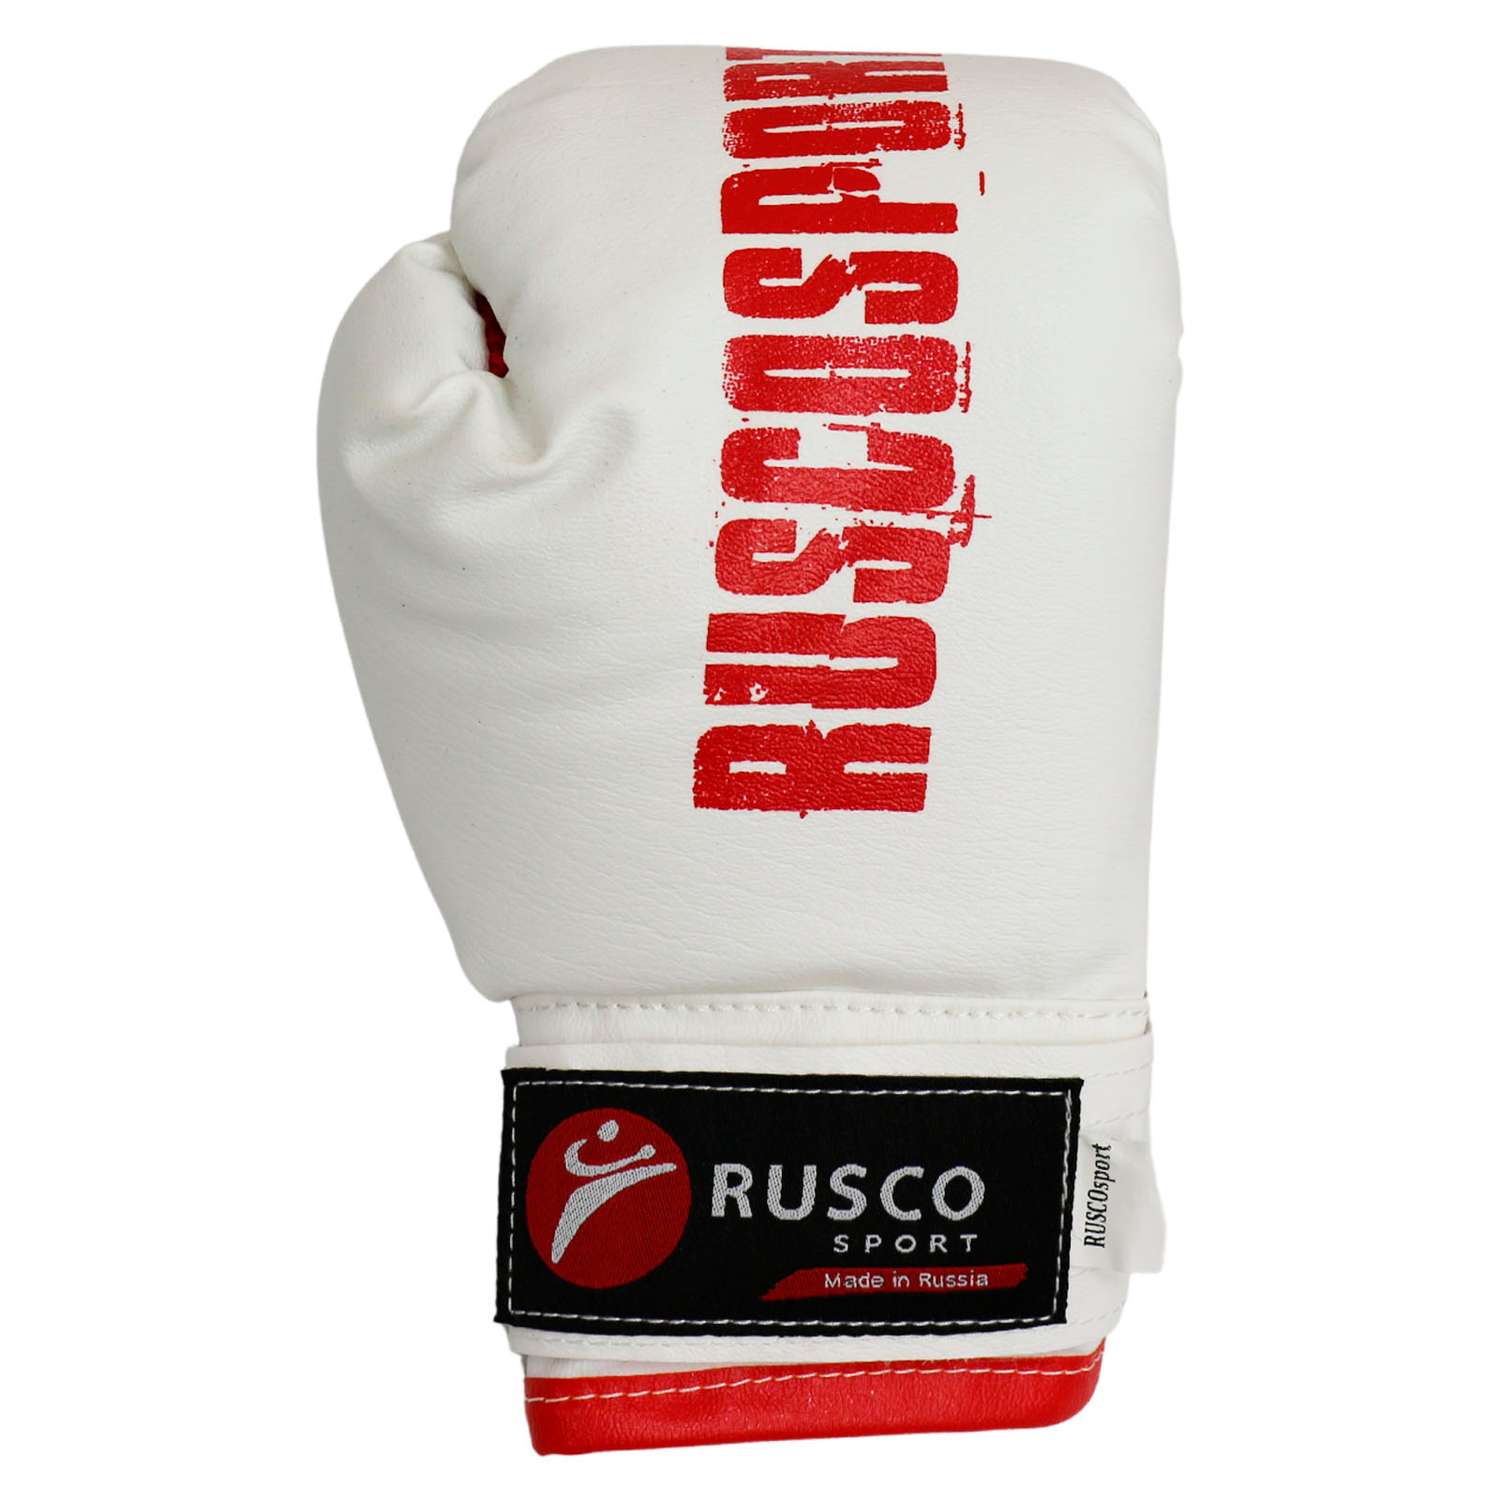 Набор для бокса RuscoSport красный 6OZ триколор - фото 4